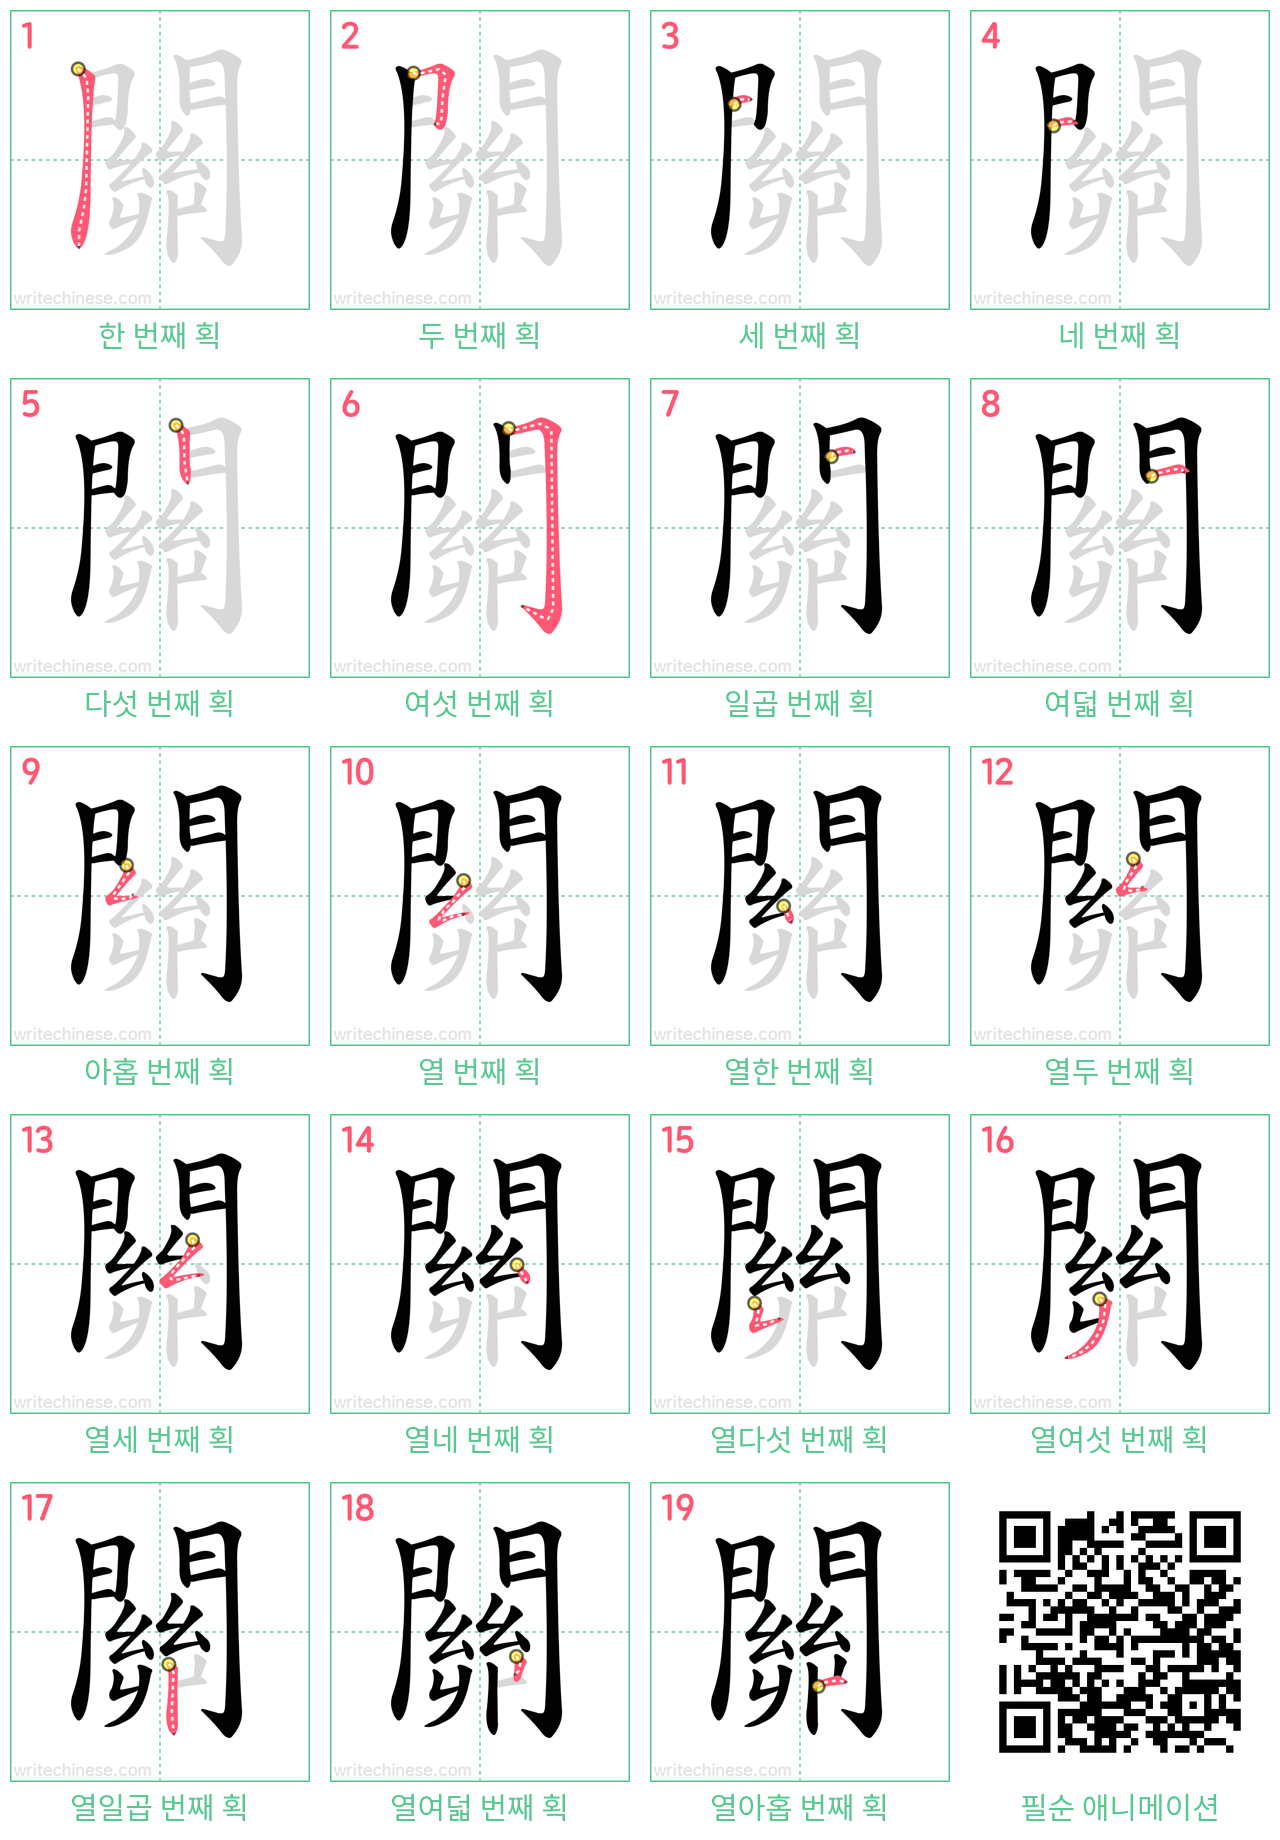 關 step-by-step stroke order diagrams